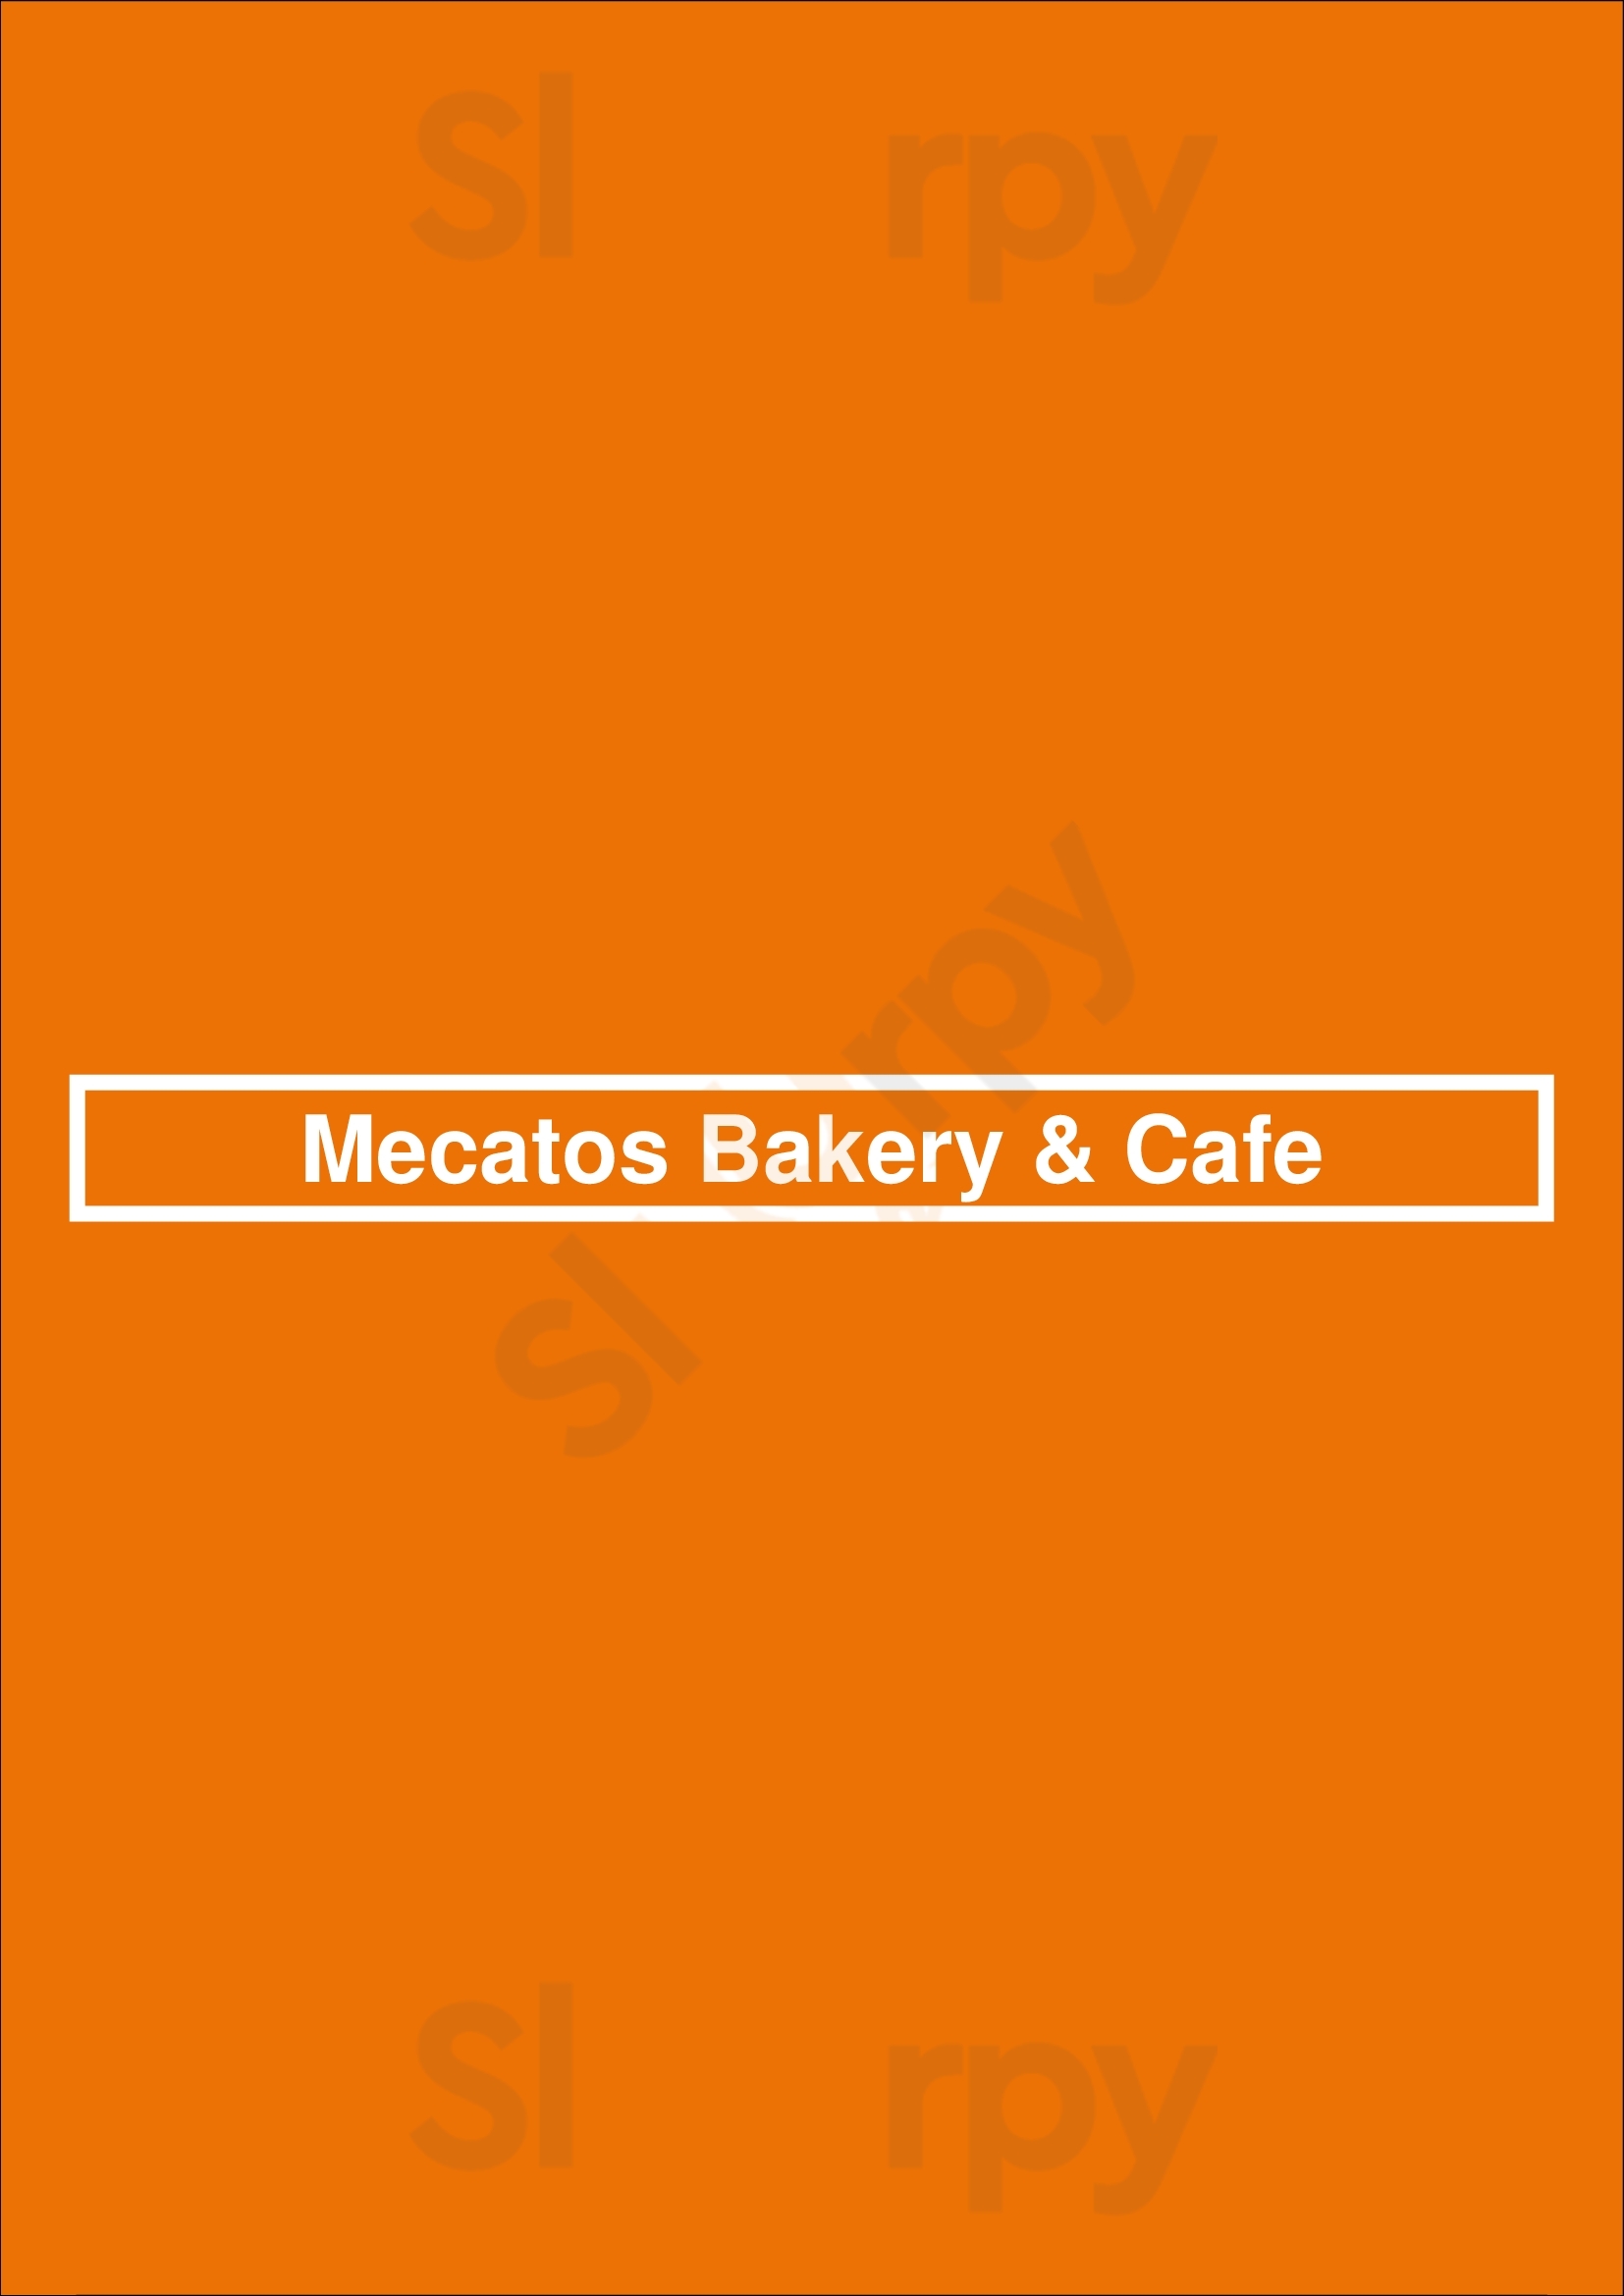 Mecatos Bakery & Cafe Orlando Menu - 1